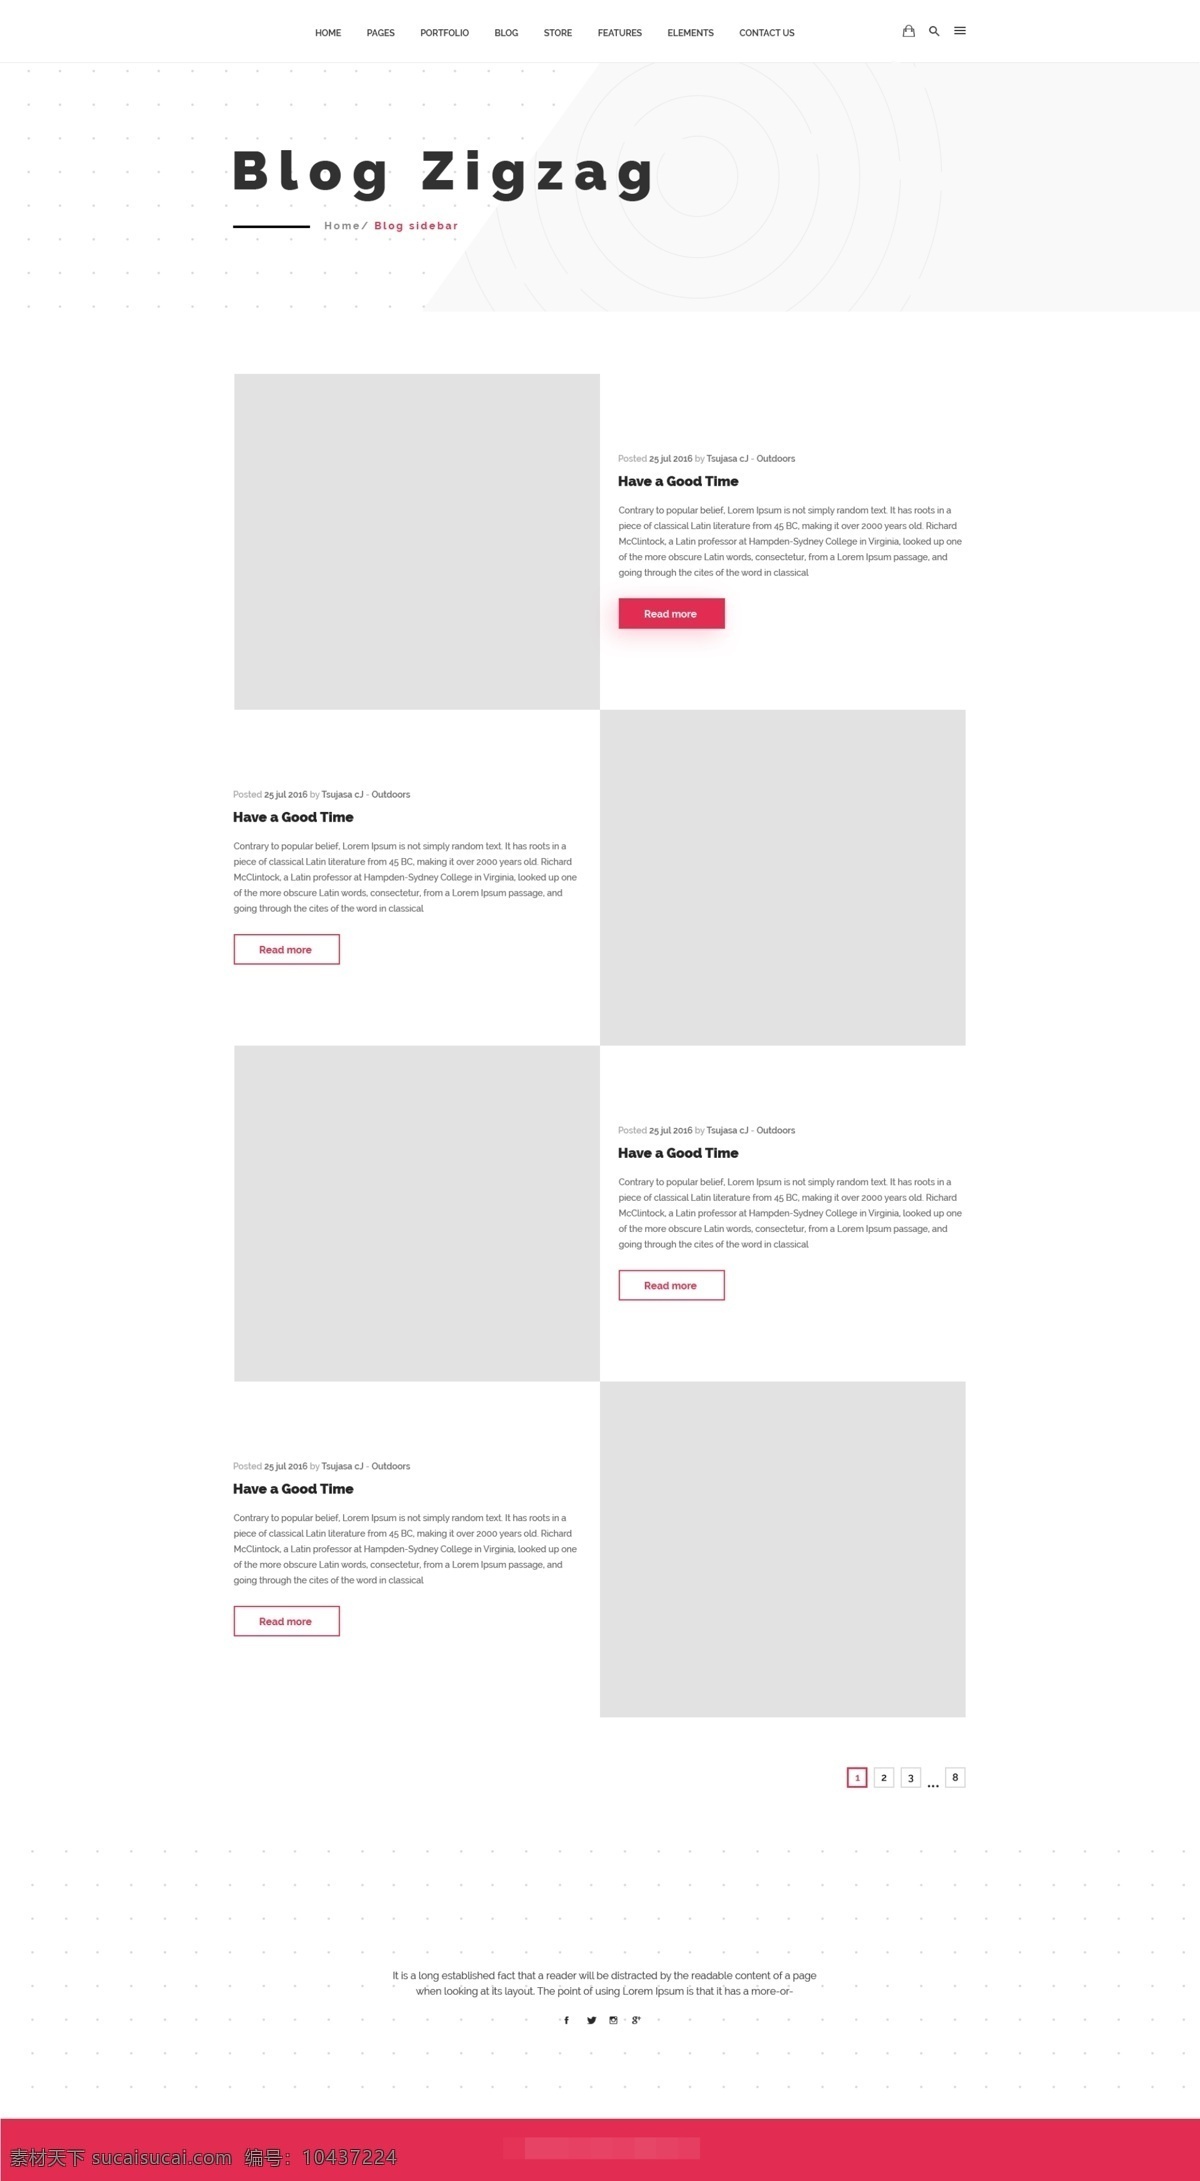 1989 网站 博客 字形 展示 页面 模板 时尚 文字 欧美 psd格式 模块 展示页面 网页ui 国外模板 高档网页 高档网站 ui设计